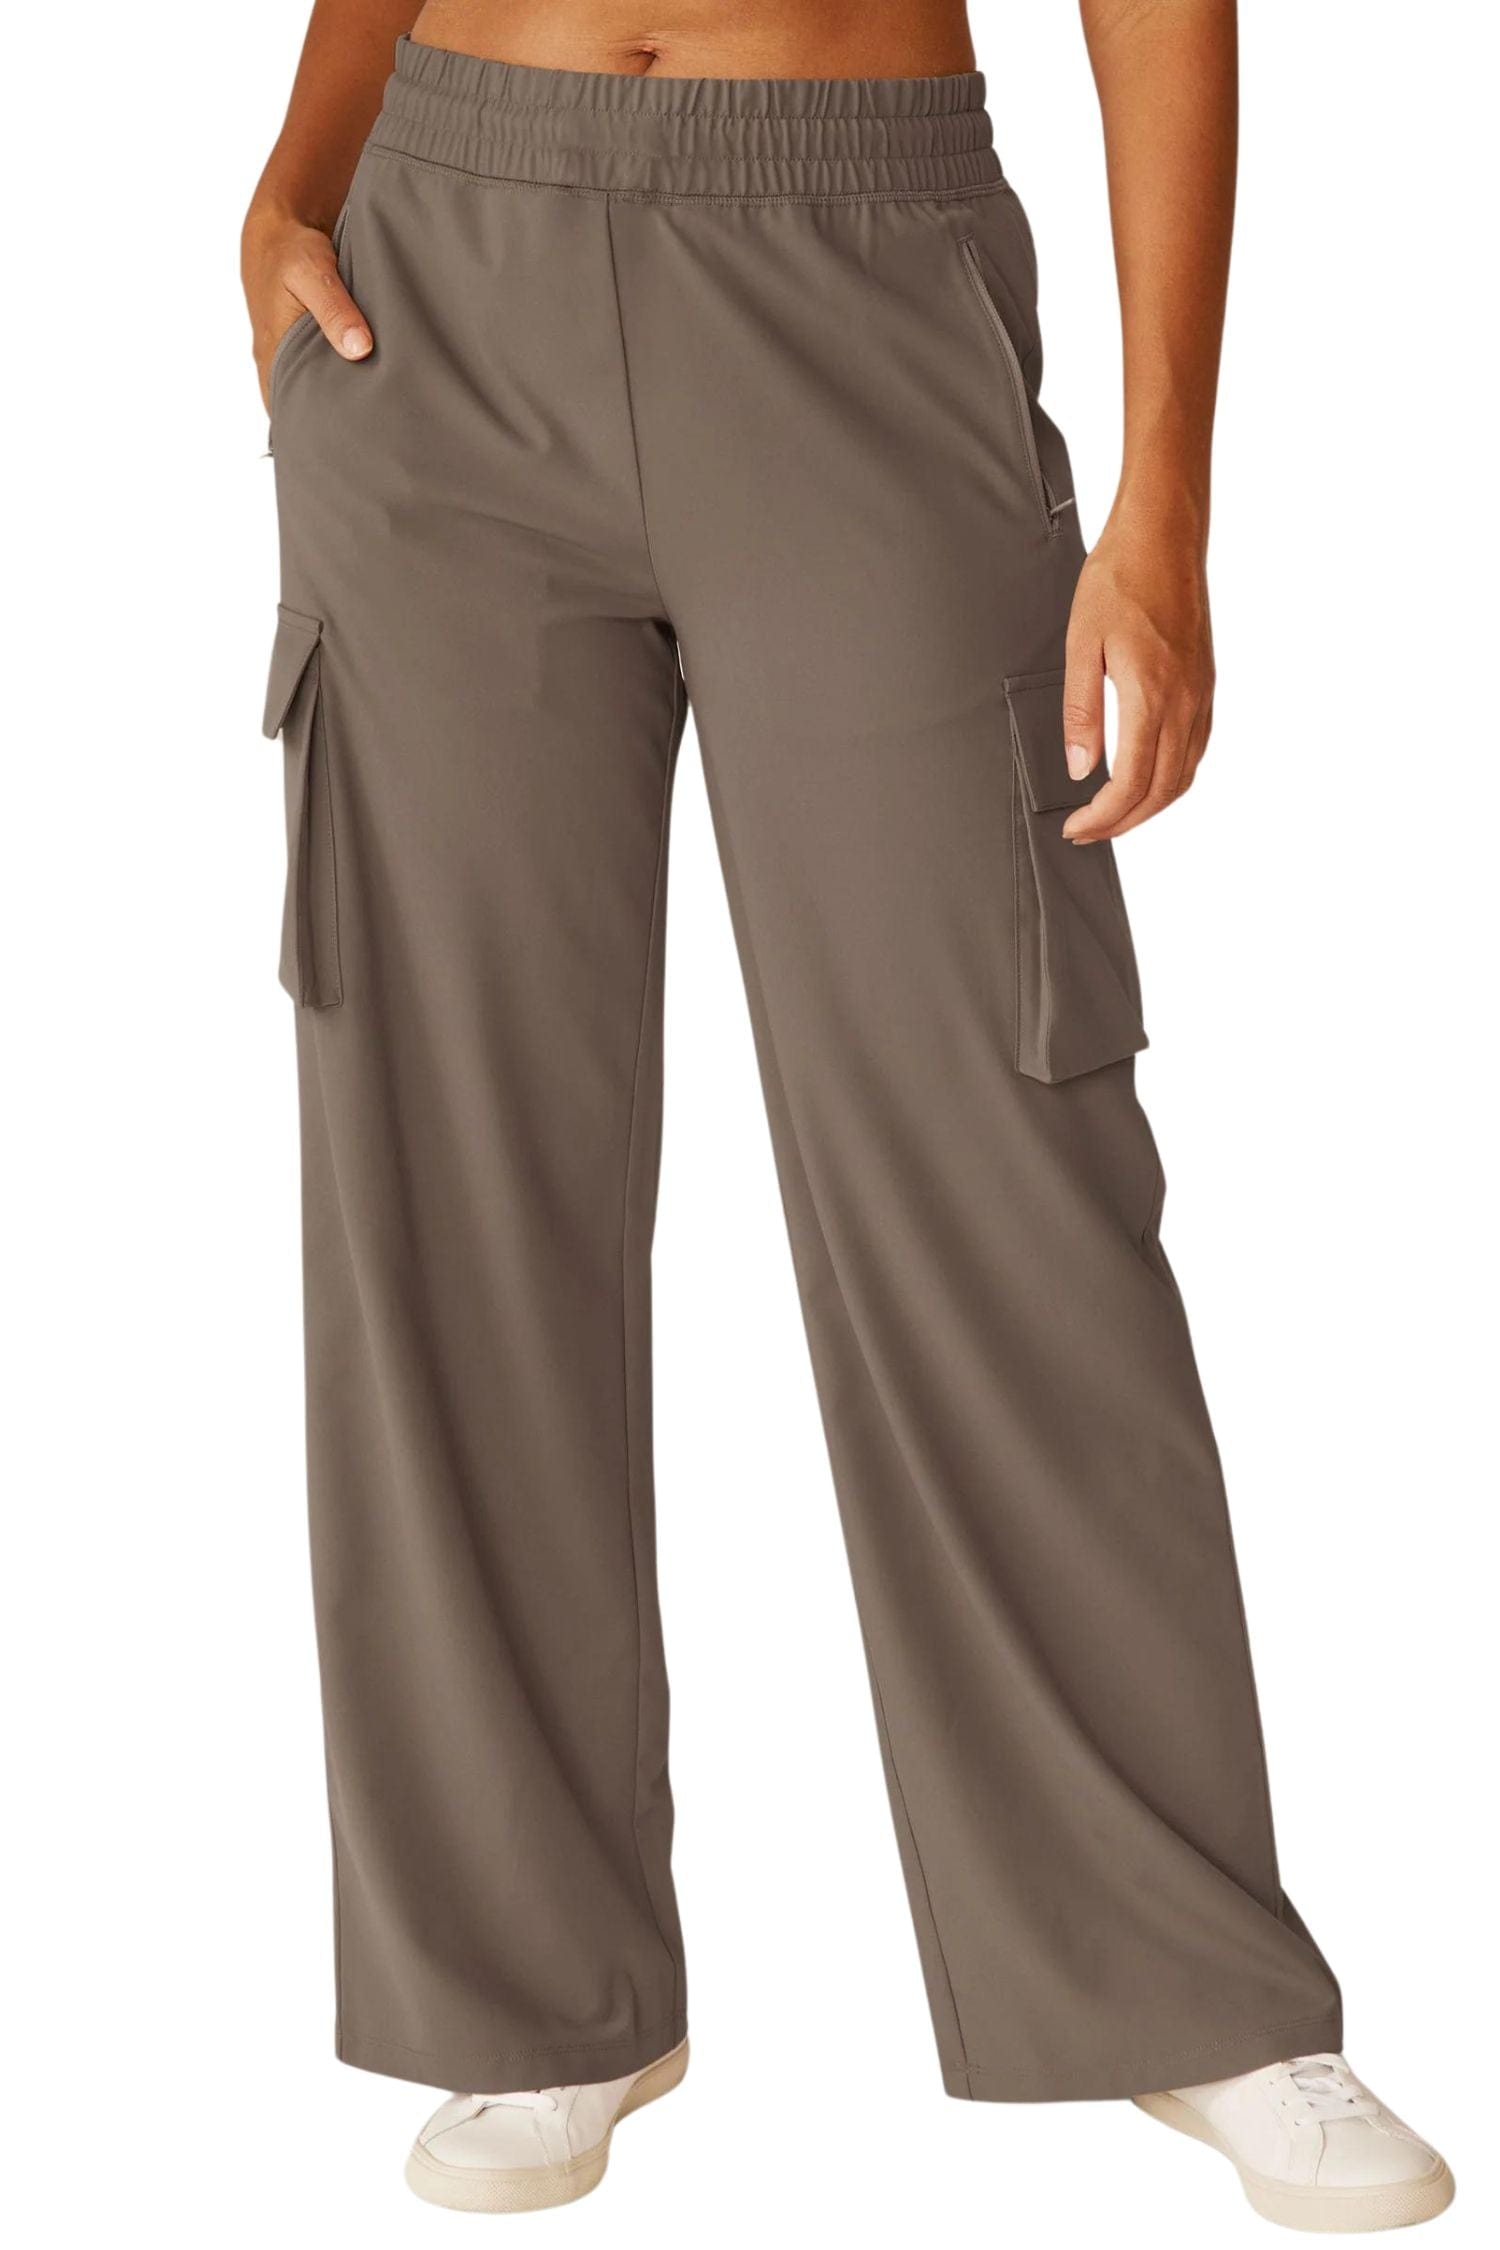 Cheap Women Summer Solid Color Double Pocket Pants Loose Long Pants  Trousers Ladies Cotton Linen Trousers | Joom